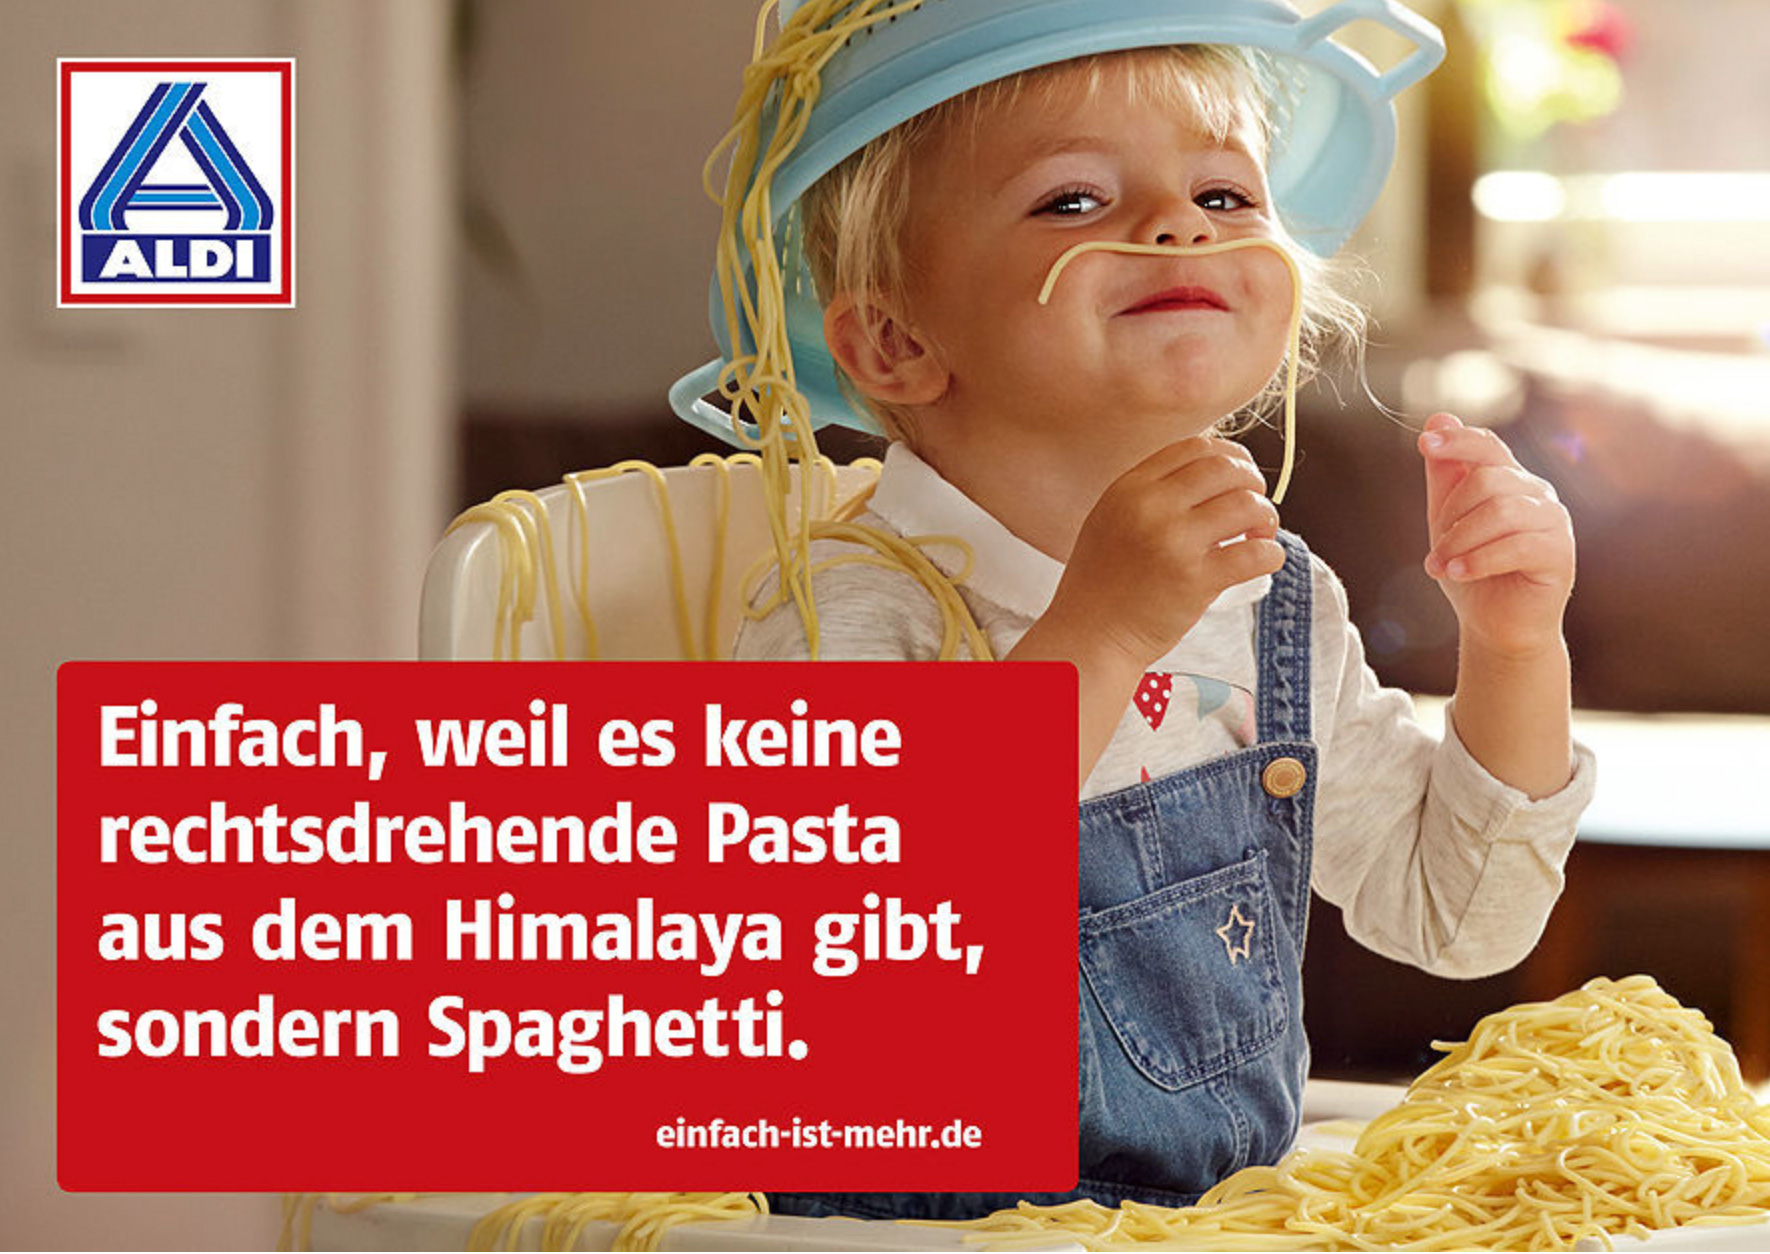 ALDI-NORD_Einfach-ist-mehr_Kampagnenmotiv_Spaghetti